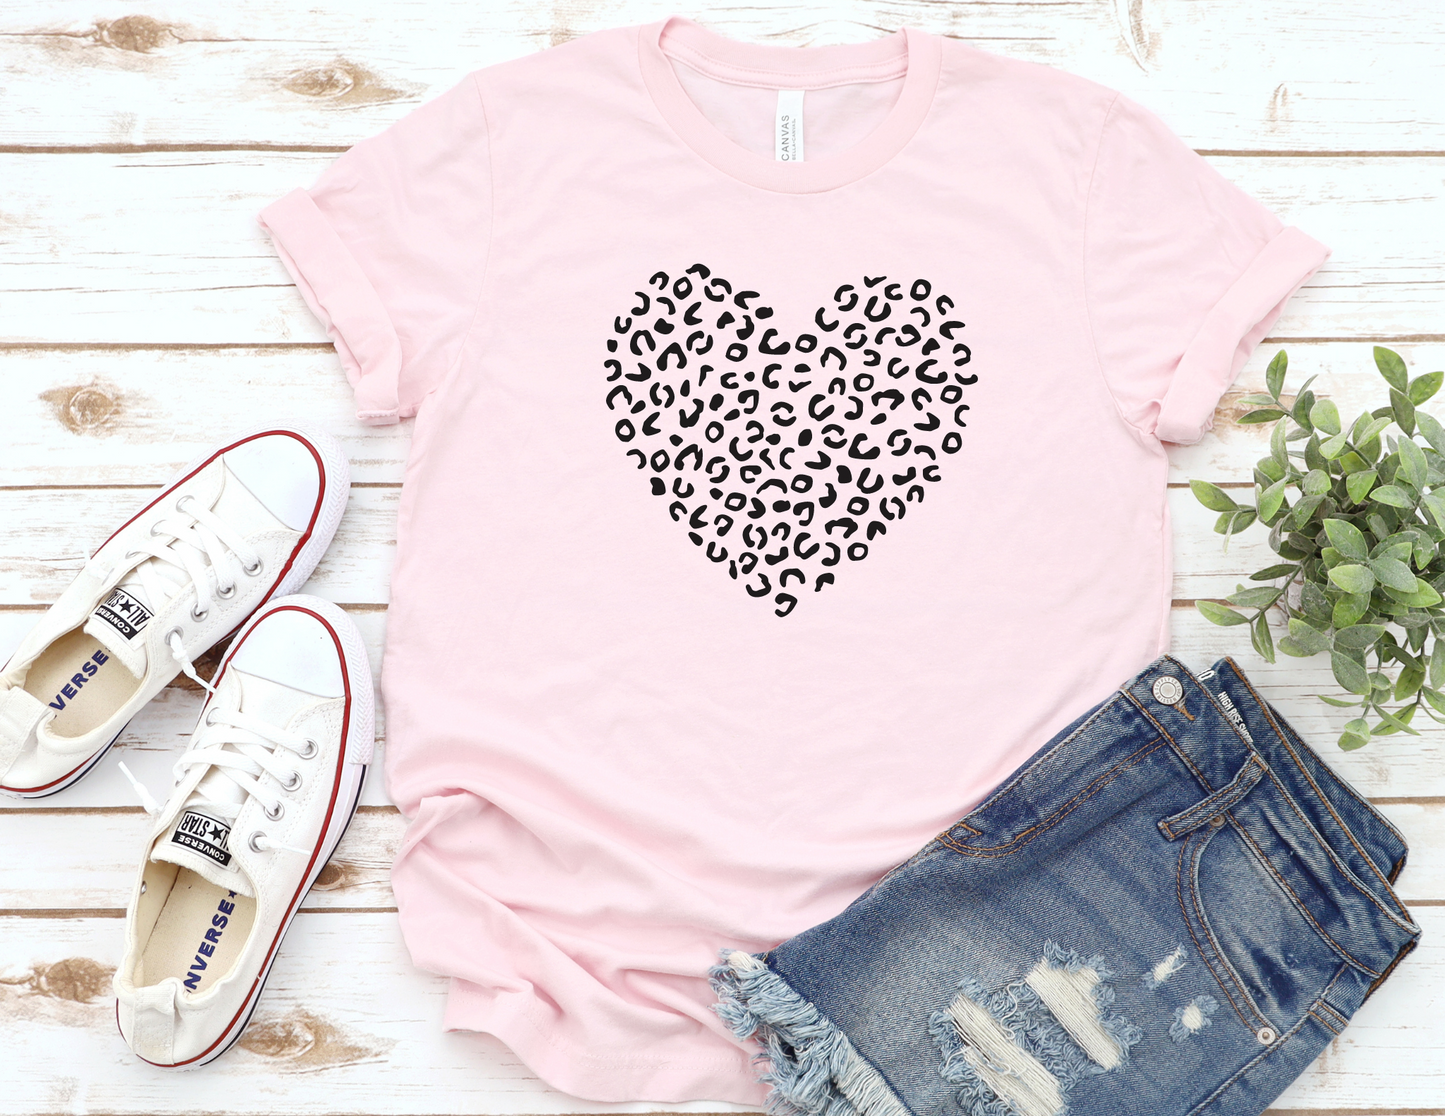 Cheetah Heart T-Shirt